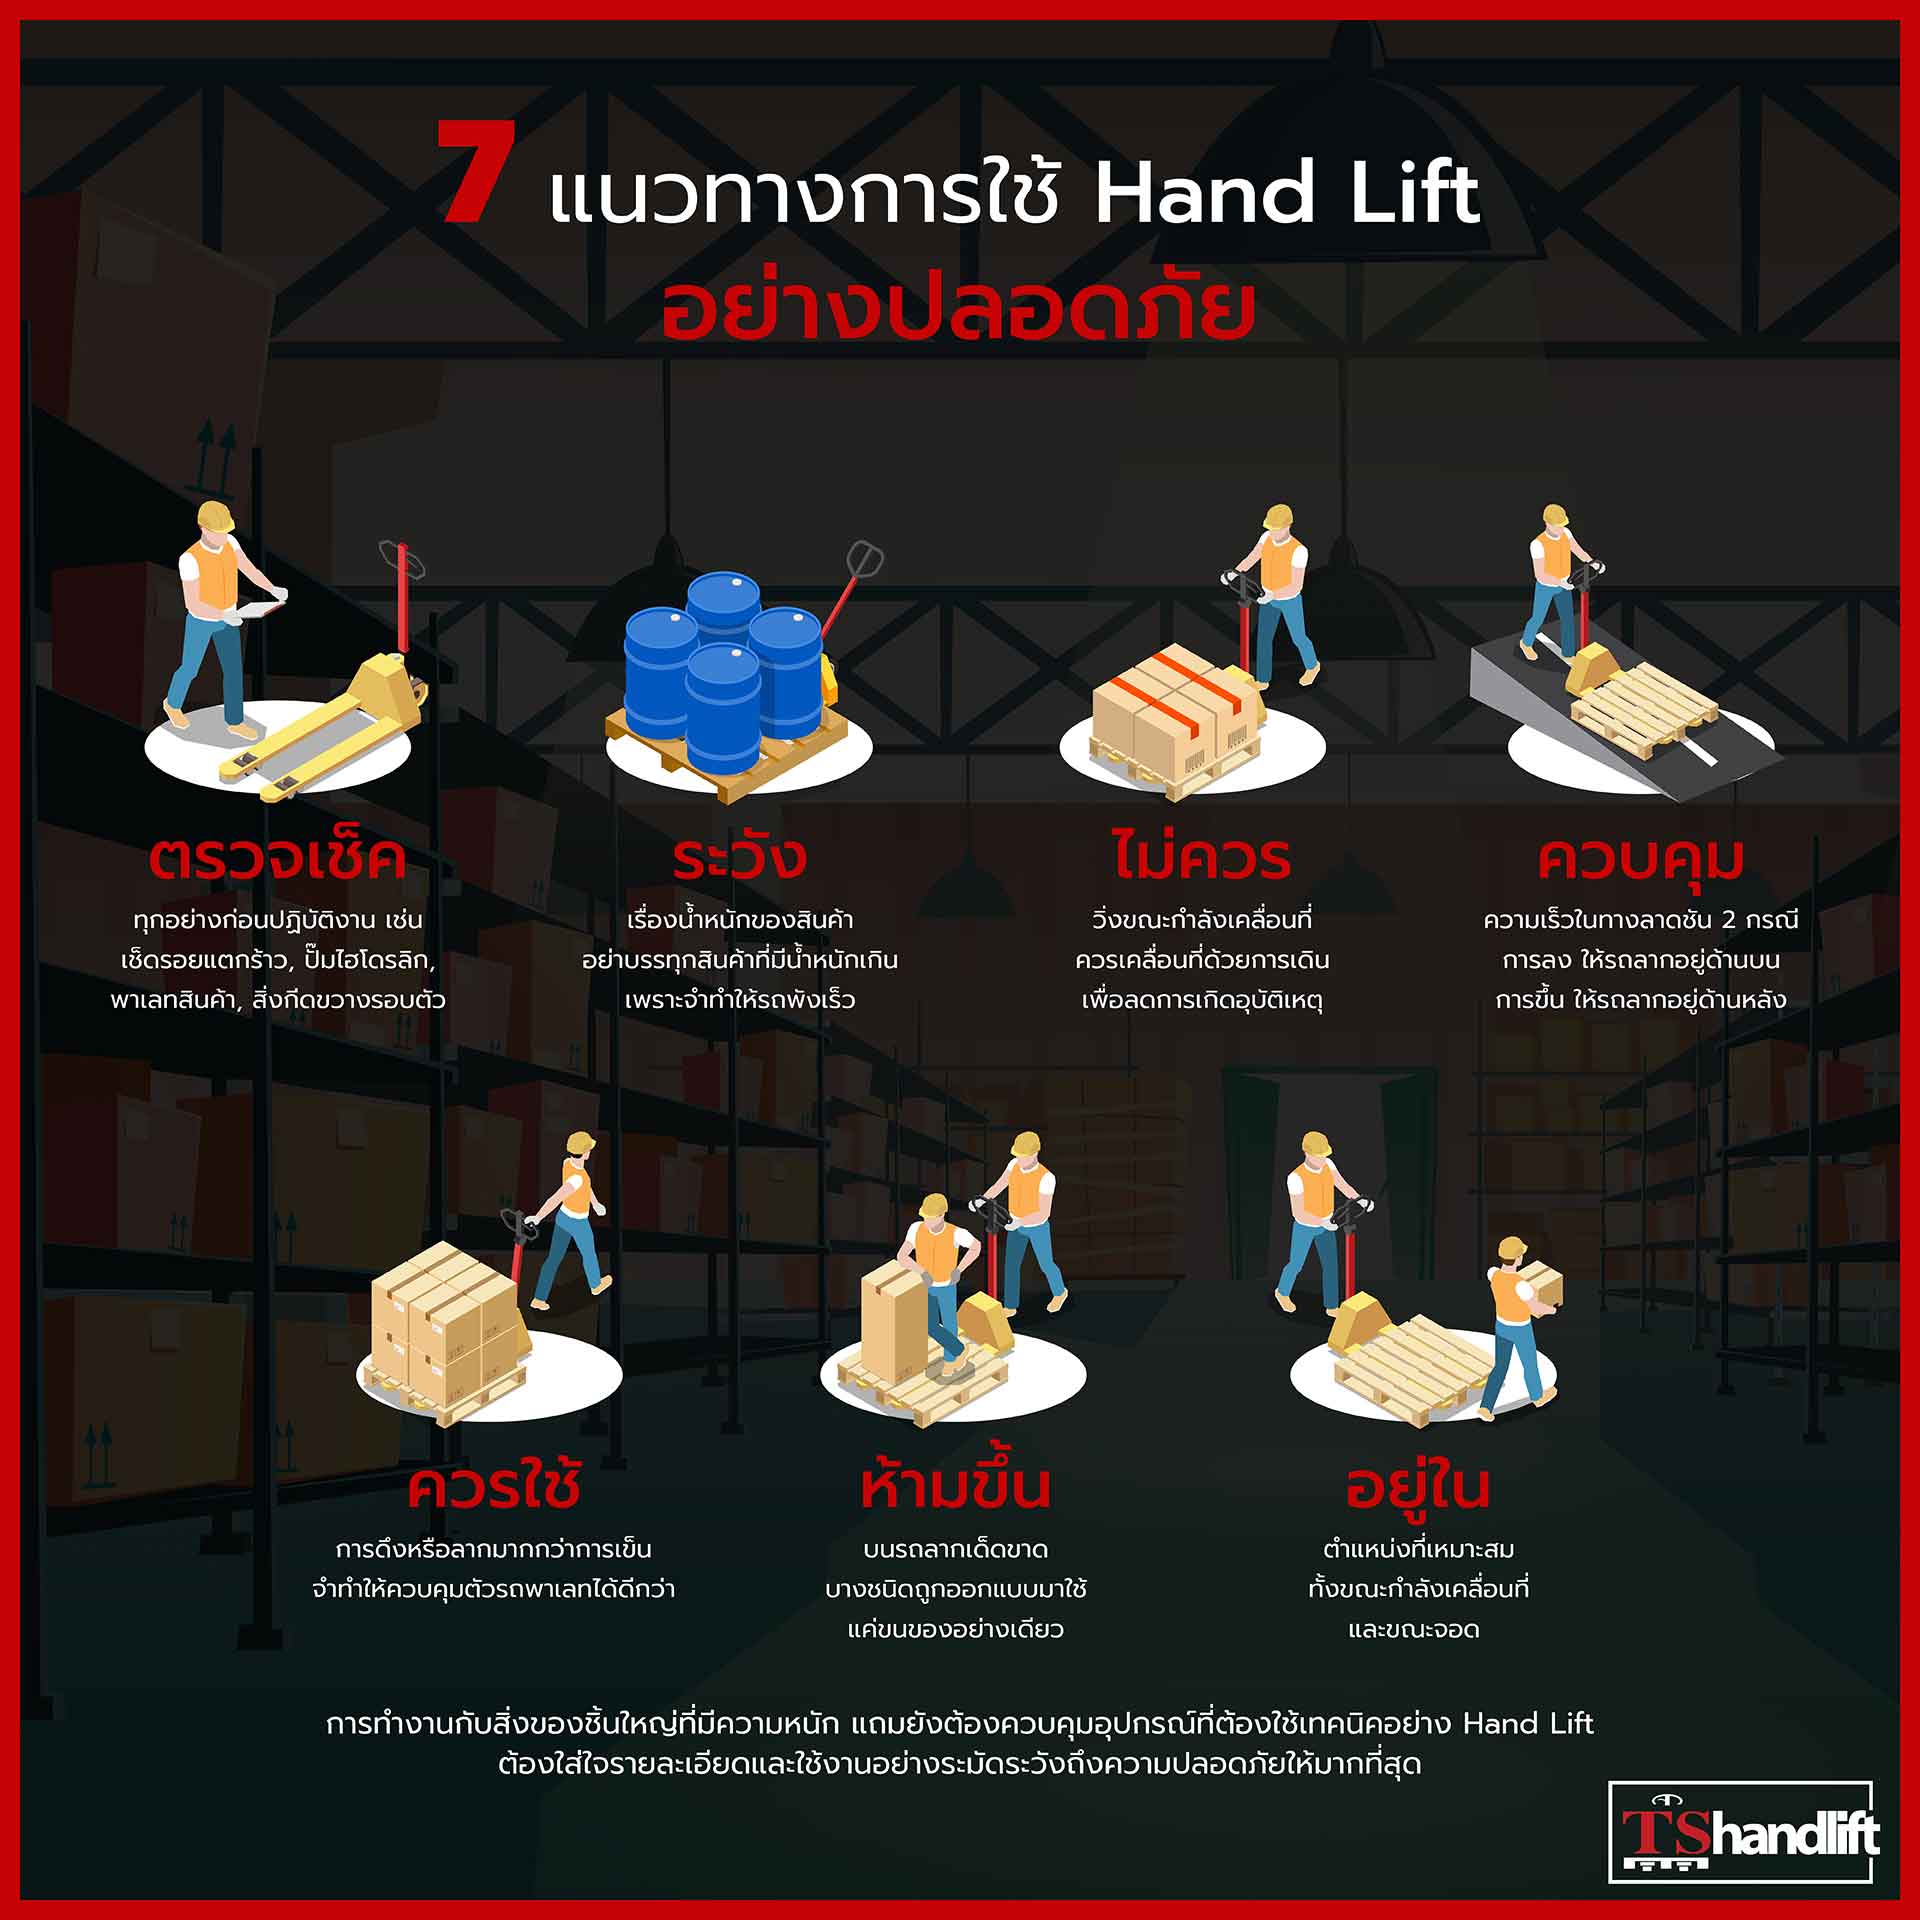 7 แนวทางการใช้แฮนด์ลิฟท์อย่างปลอดภัย